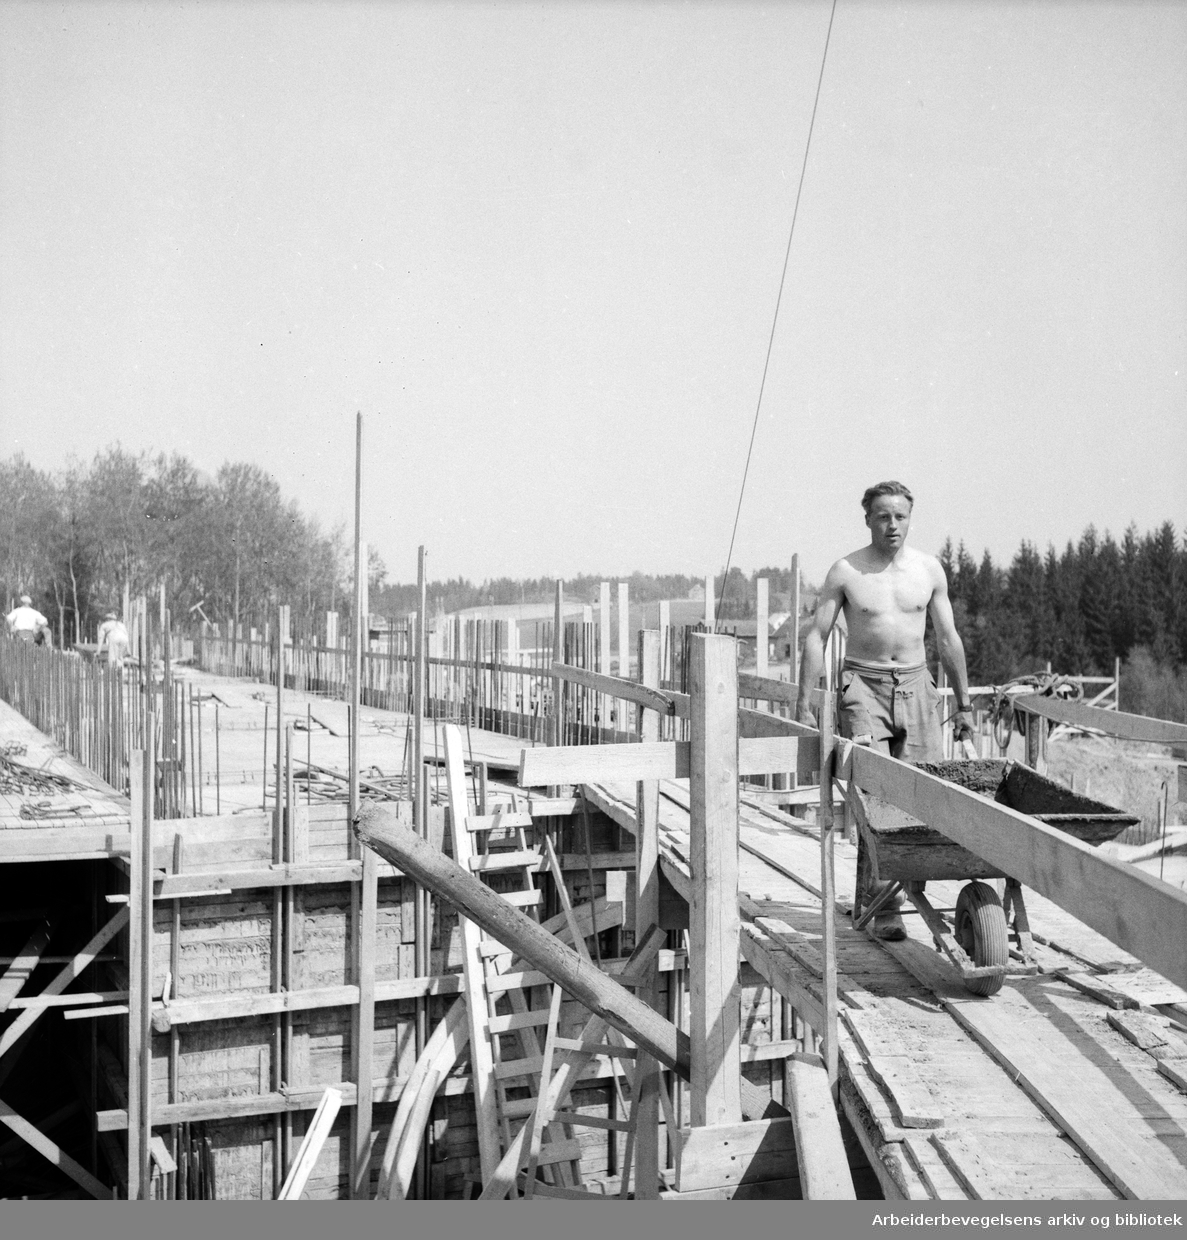 Mann med trillebår. Bygningsarbeider. Antatt Oslo. 1955 - 1960.